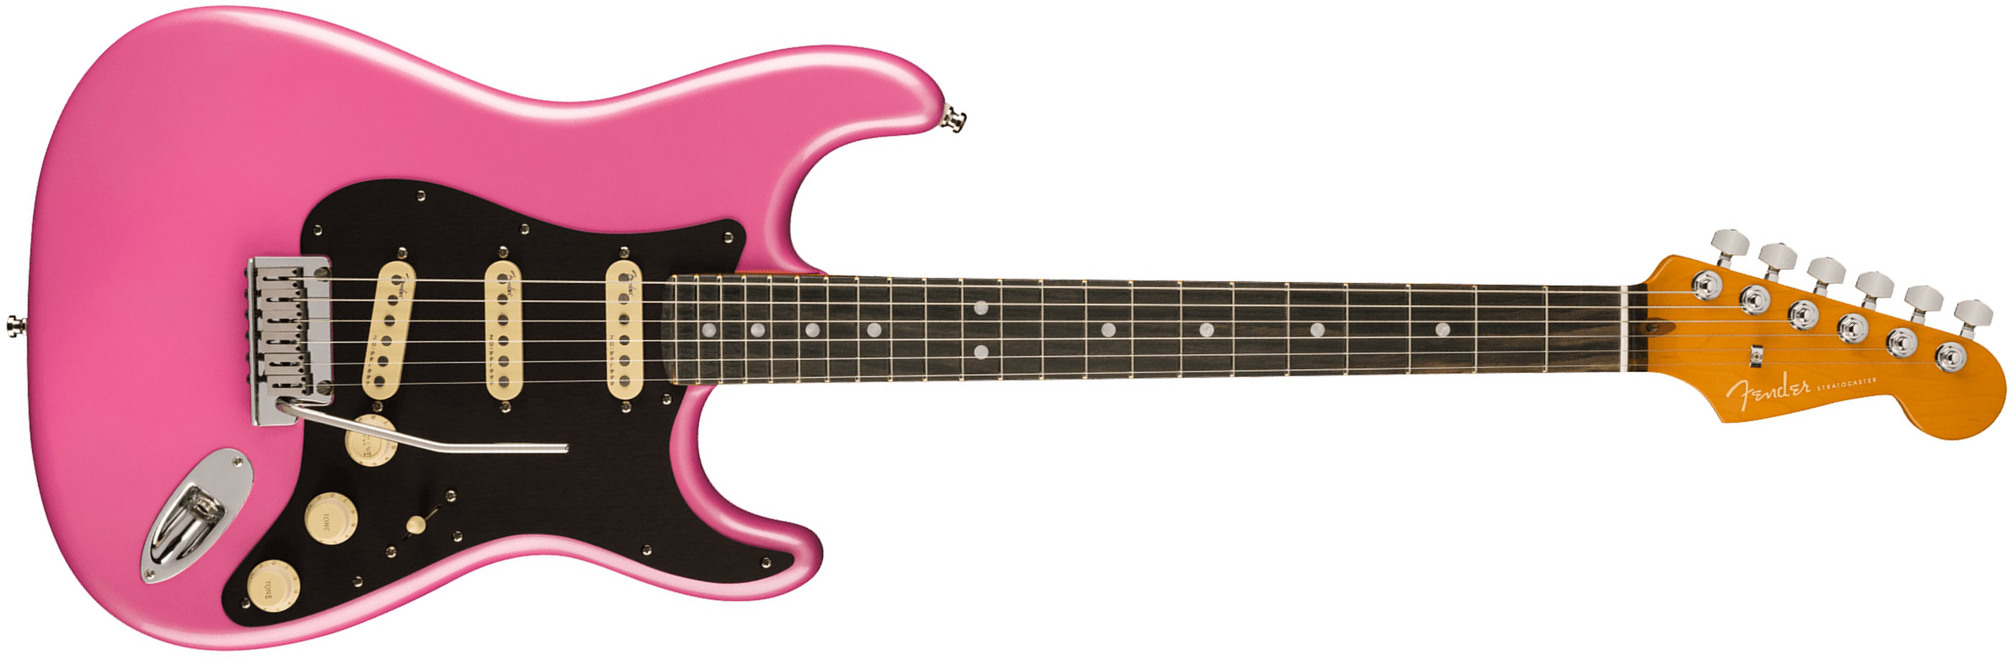 Fender Strat American Ultra Ltd Usa 3s Trem Eb - Bubble Gum Metallic - Guitare Électrique Forme Str - Main picture